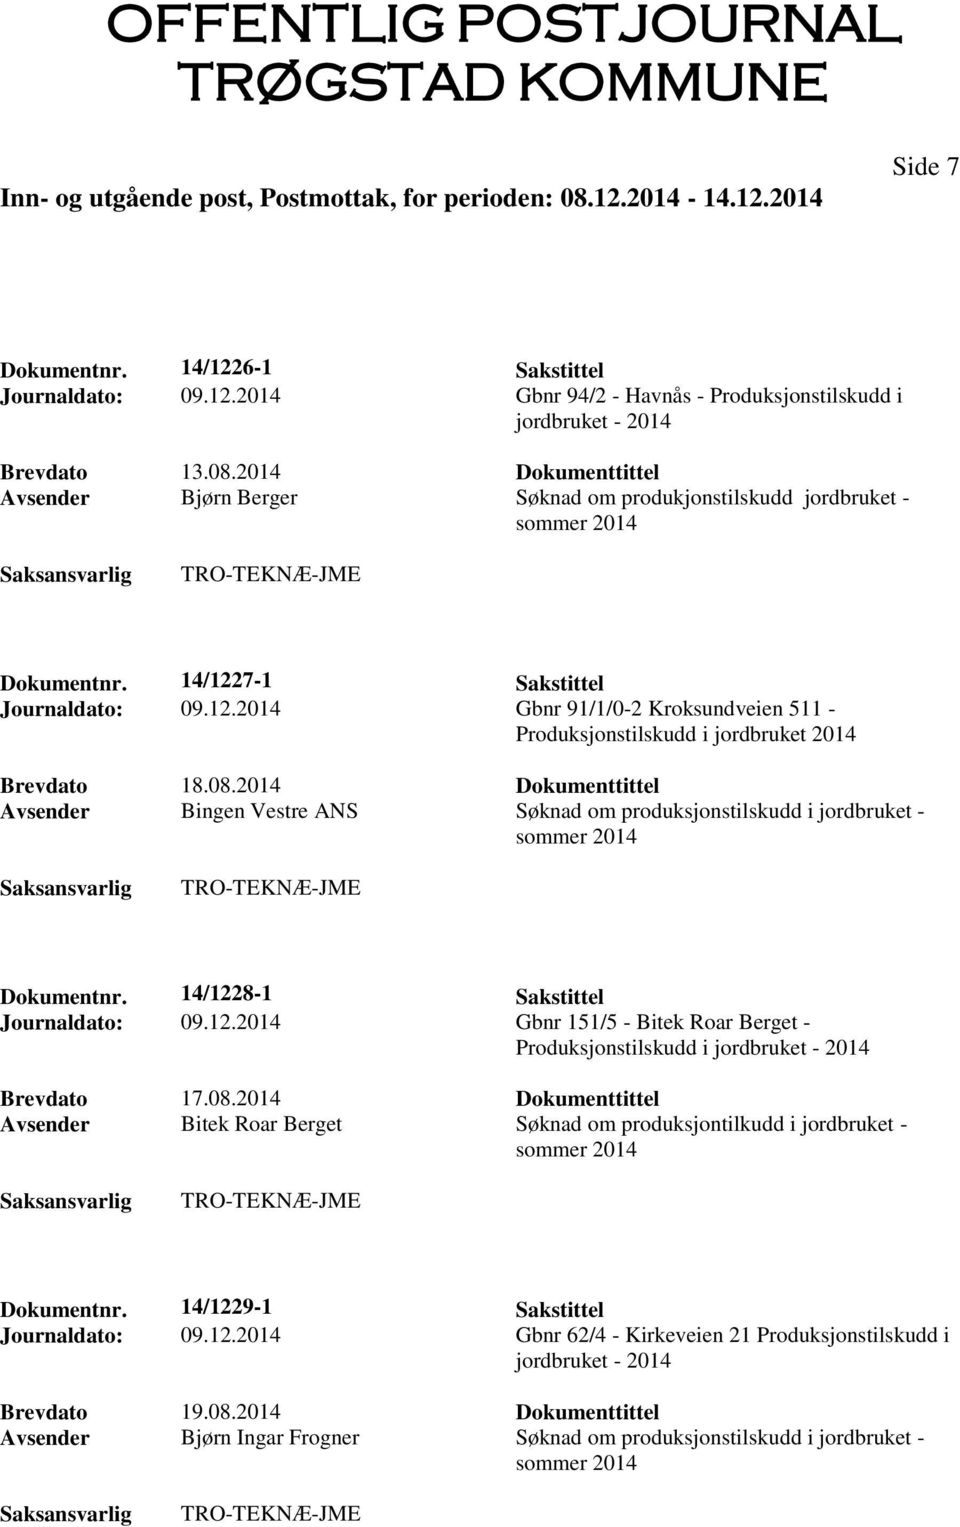 08.2014 Dokumenttittel Avsender Bingen Vestre ANS Søknad om produksjonstilskudd i jordbruket - Dokumentnr. 14/122